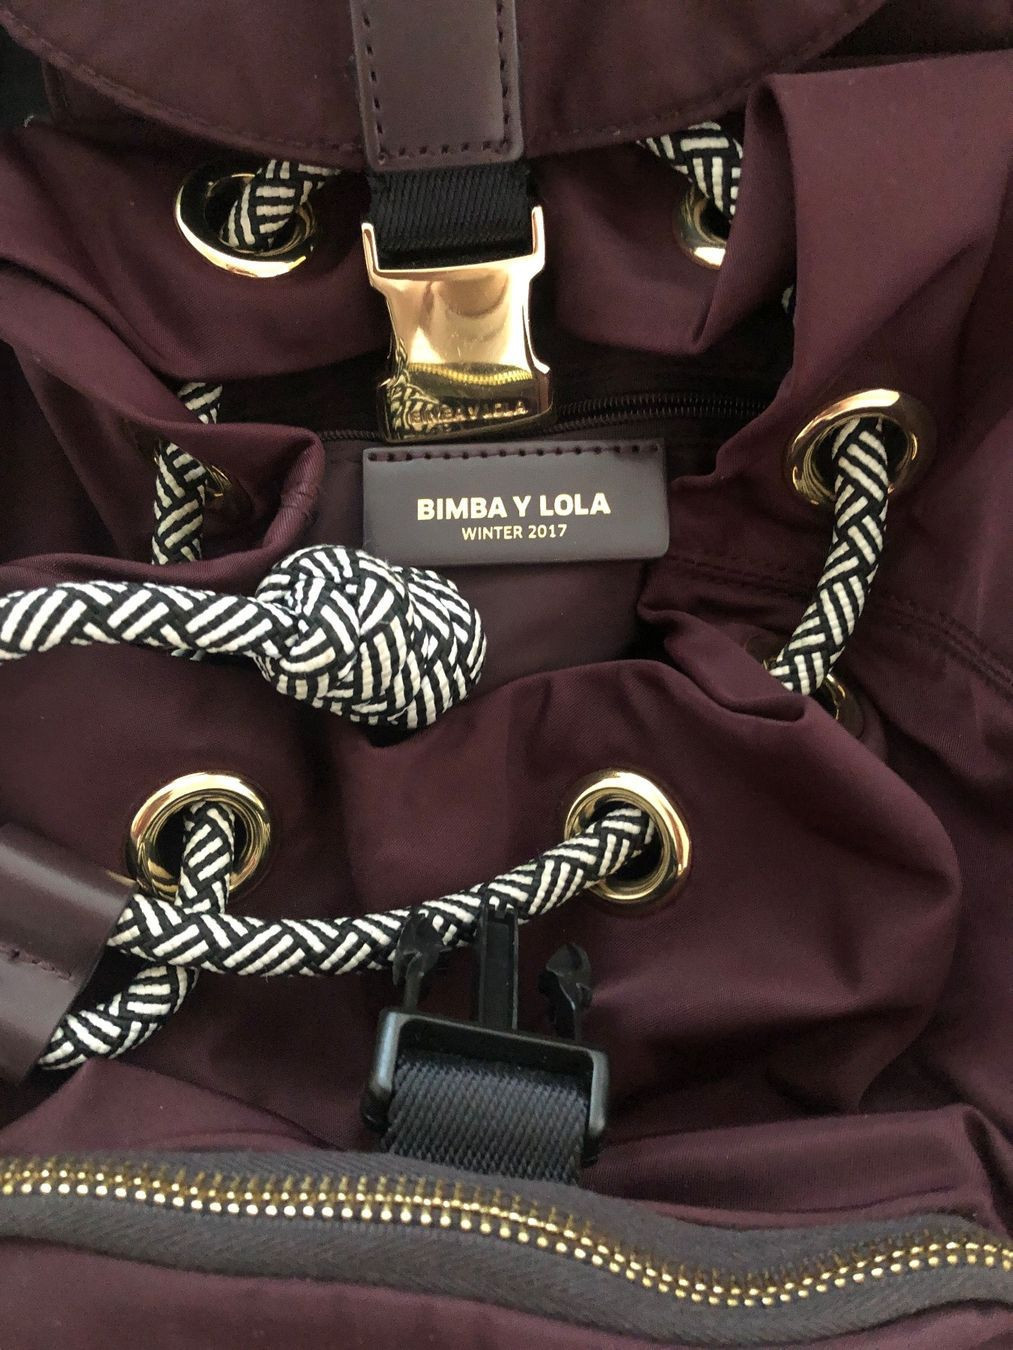 Bimba Y Lola Bag Pelota Bag Small | eBay